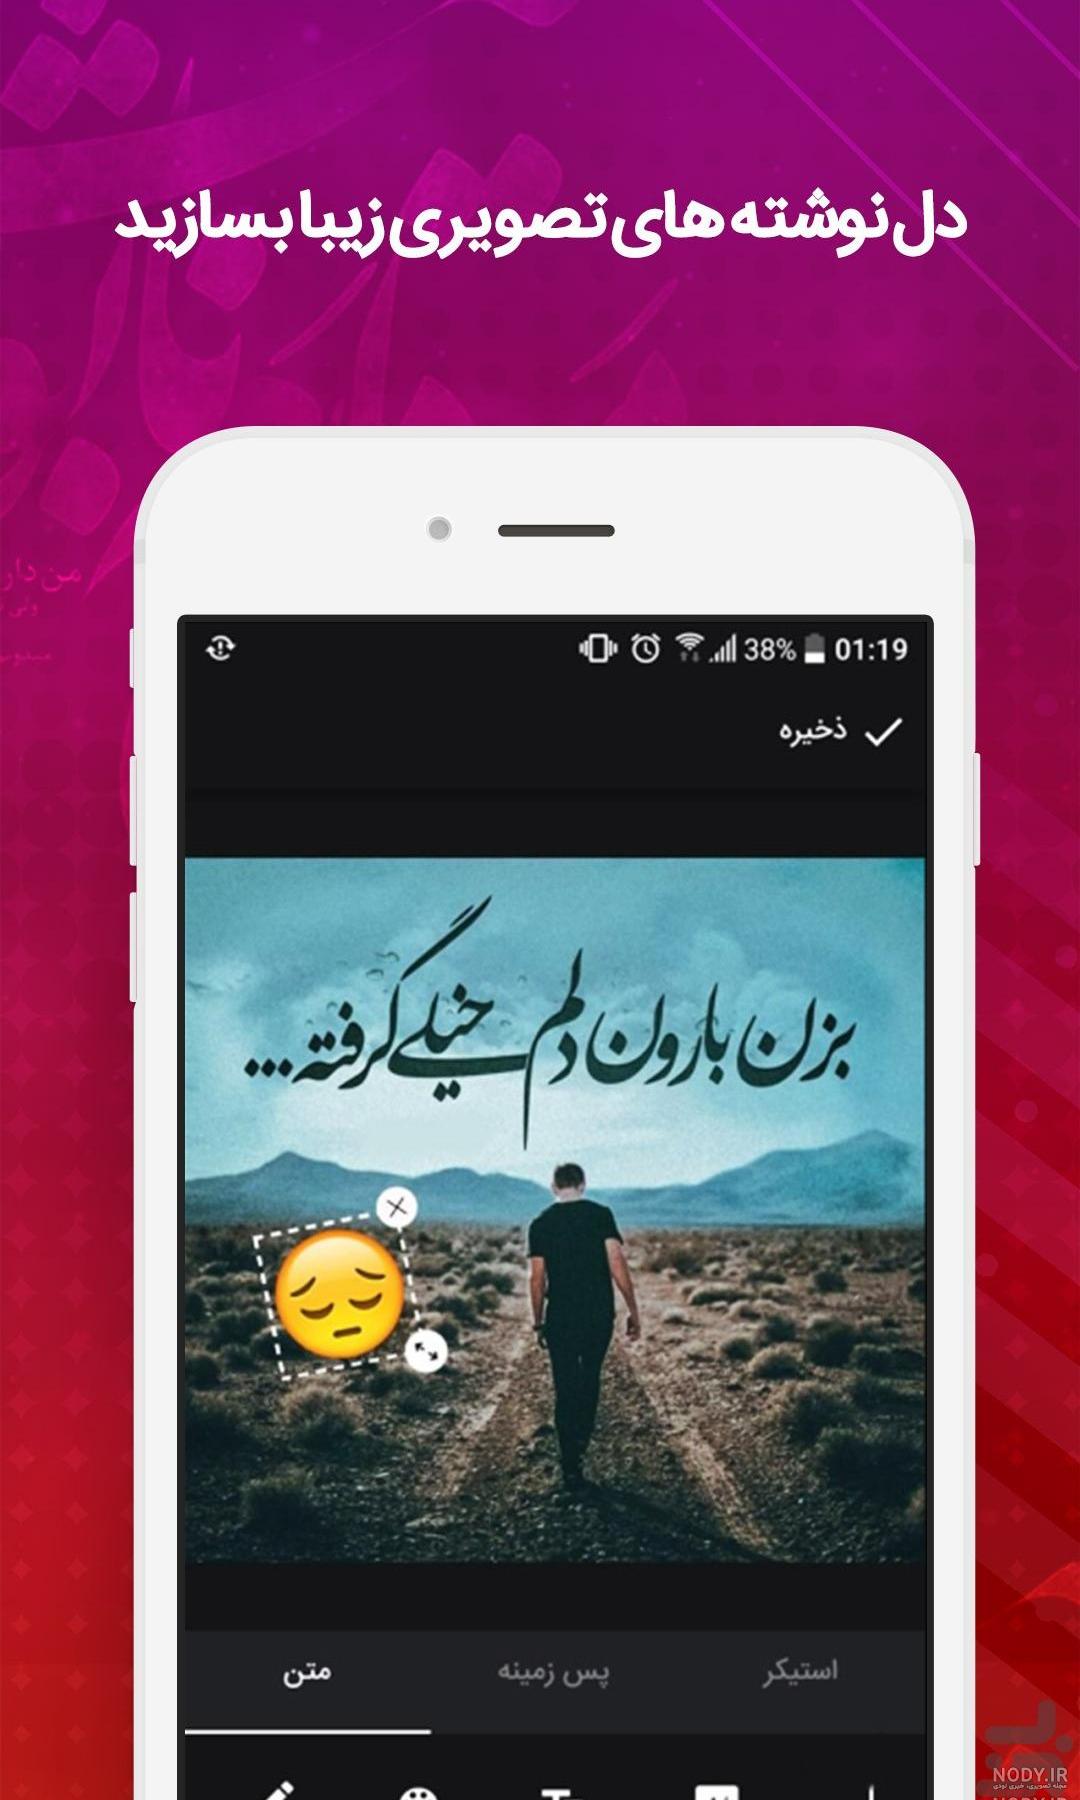 نرم افزار نوشتن فارسی روی عکس برای کامپیوتر